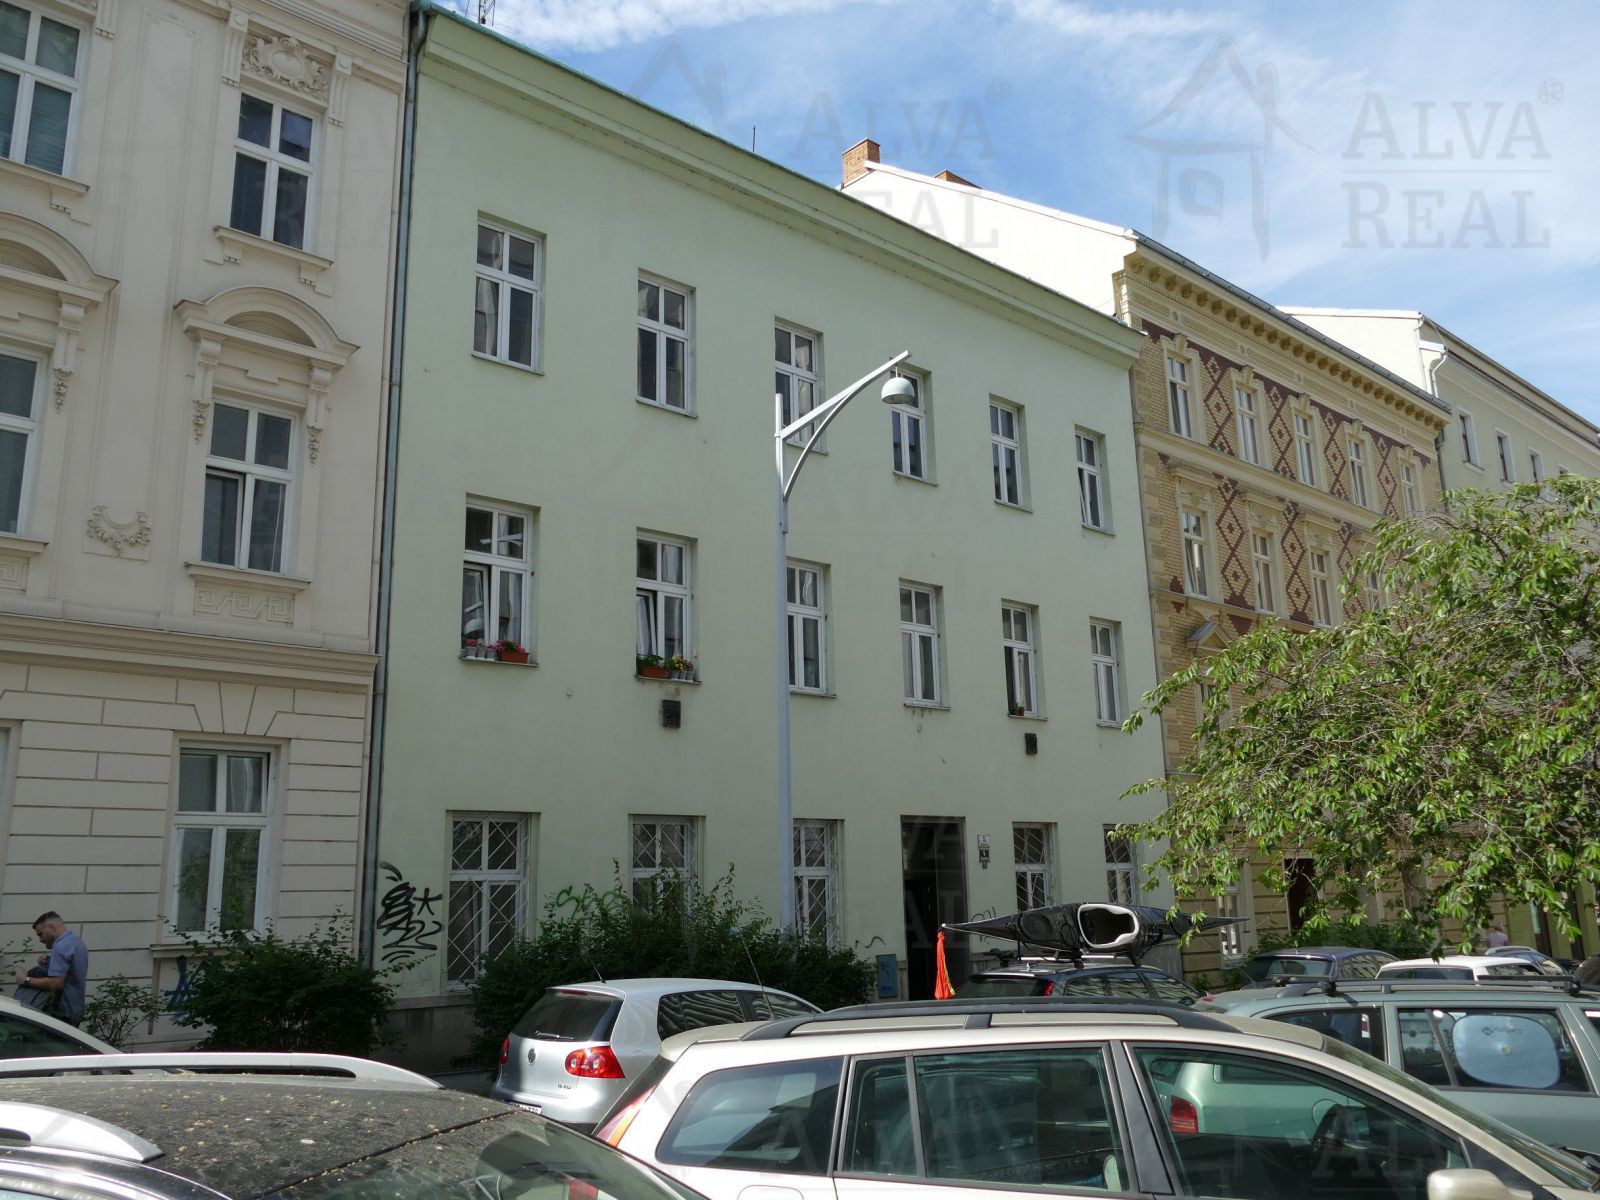 Dlouhodobý pronájem bytu 2+1 v Brně na ul. Anenská, CP 55,5 m2, možnost užívání zahrádky ve vnitrobl